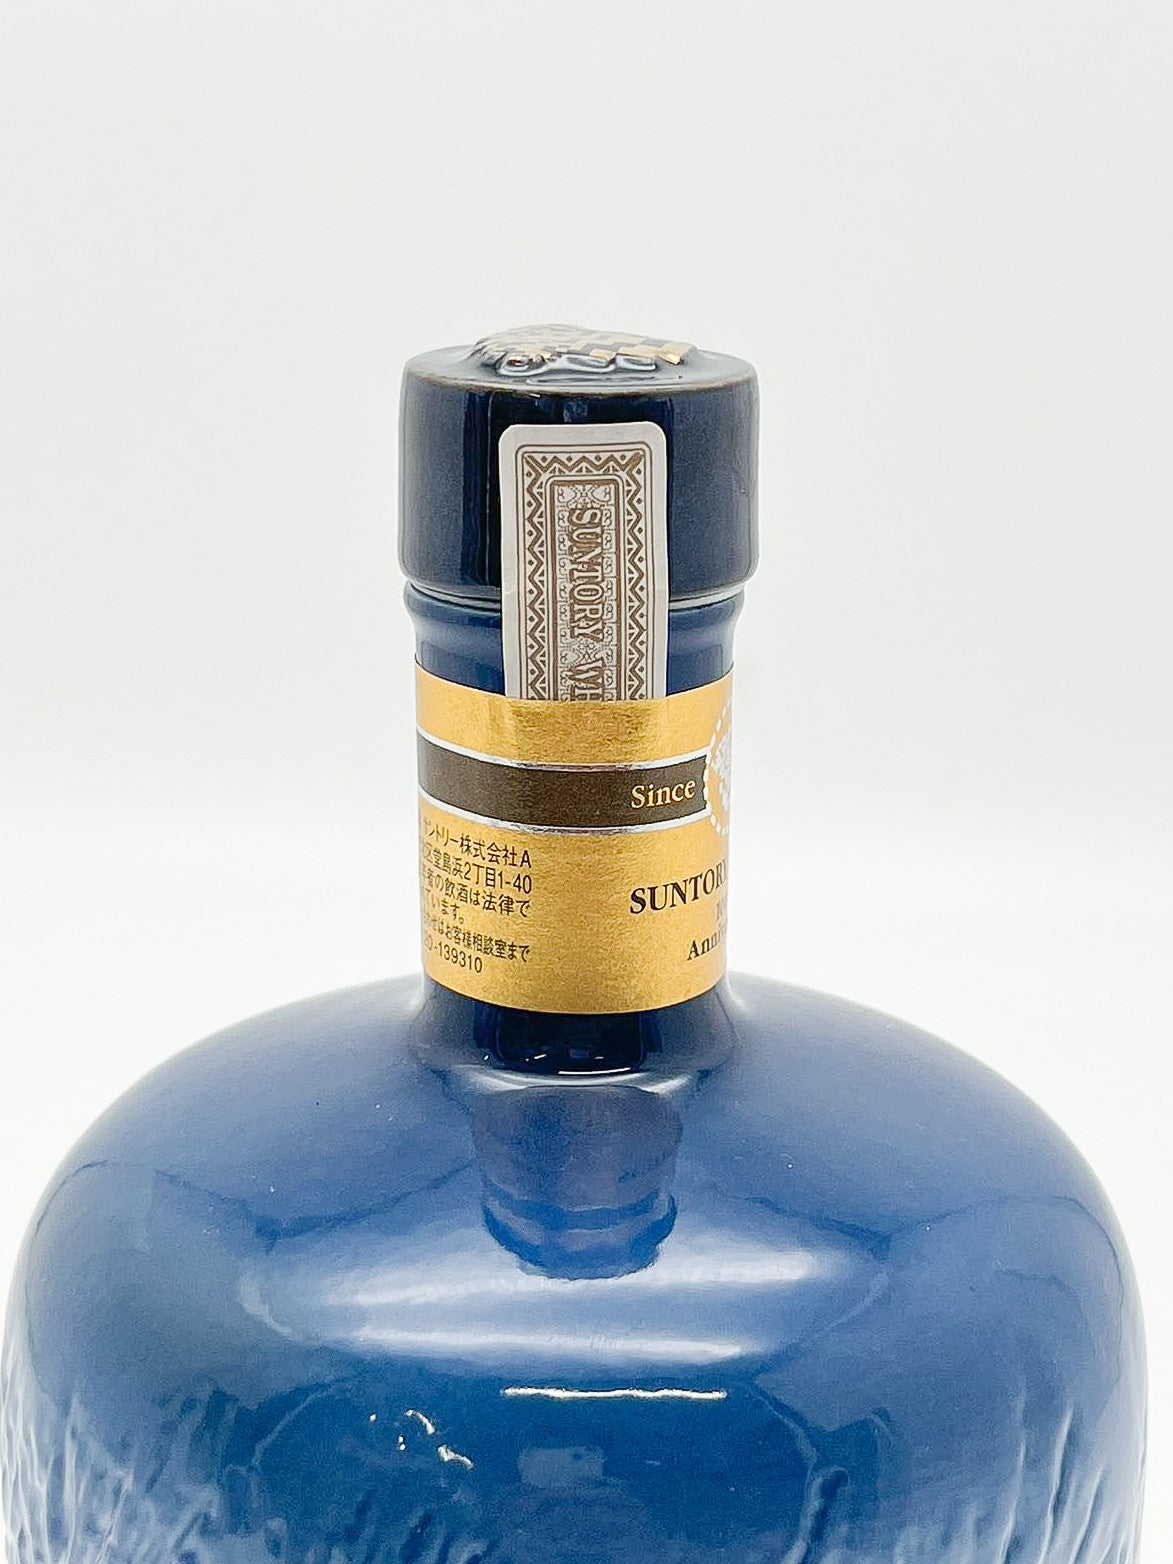 サントリー ウイスキー 創業100周年感謝百年1899-1999 佐治敬三 陶器ボトル 43% 700ml 箱付き